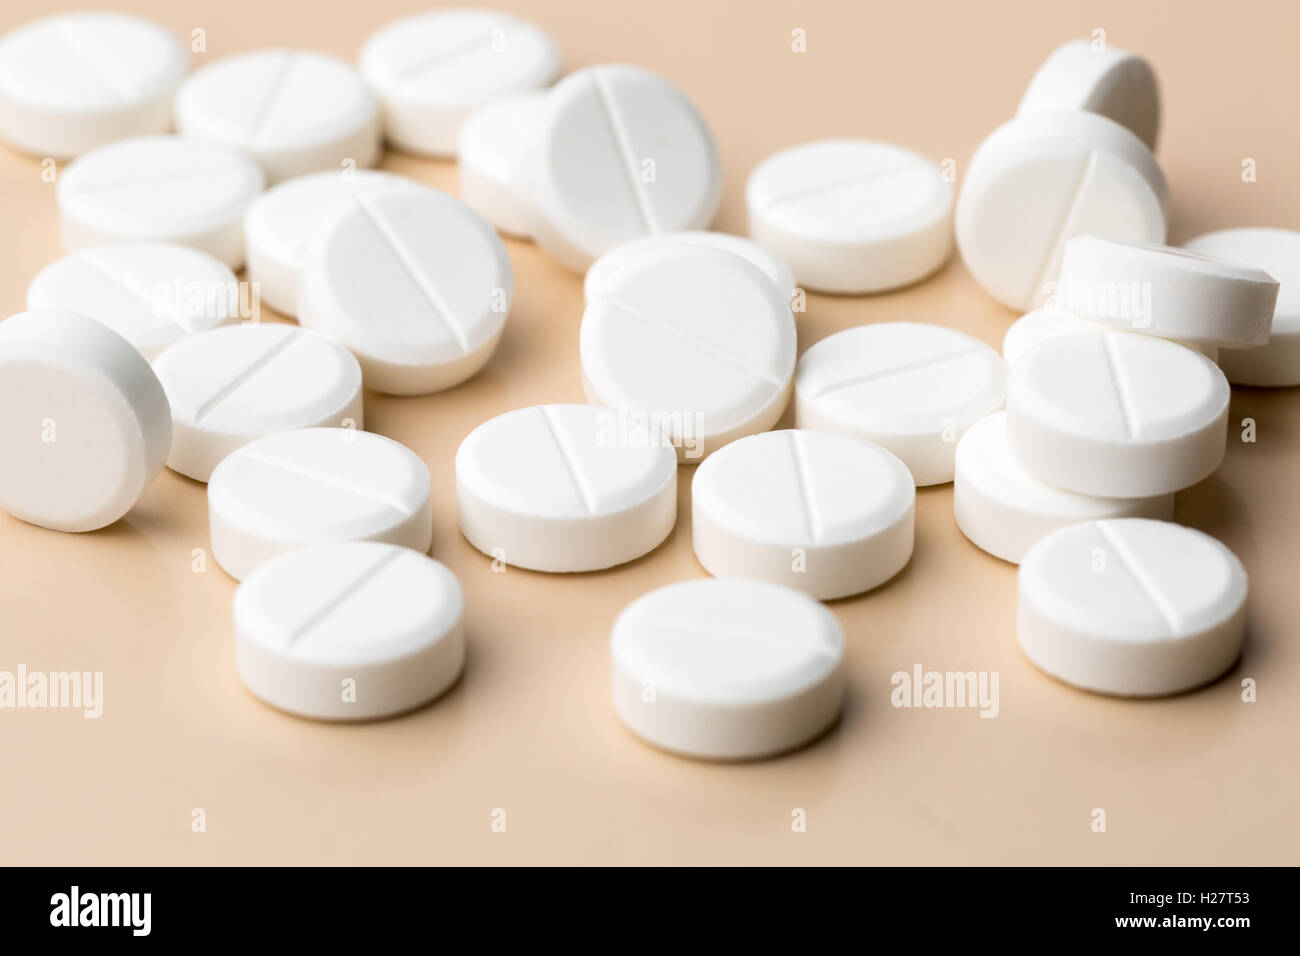 Round white pills Stock Photo